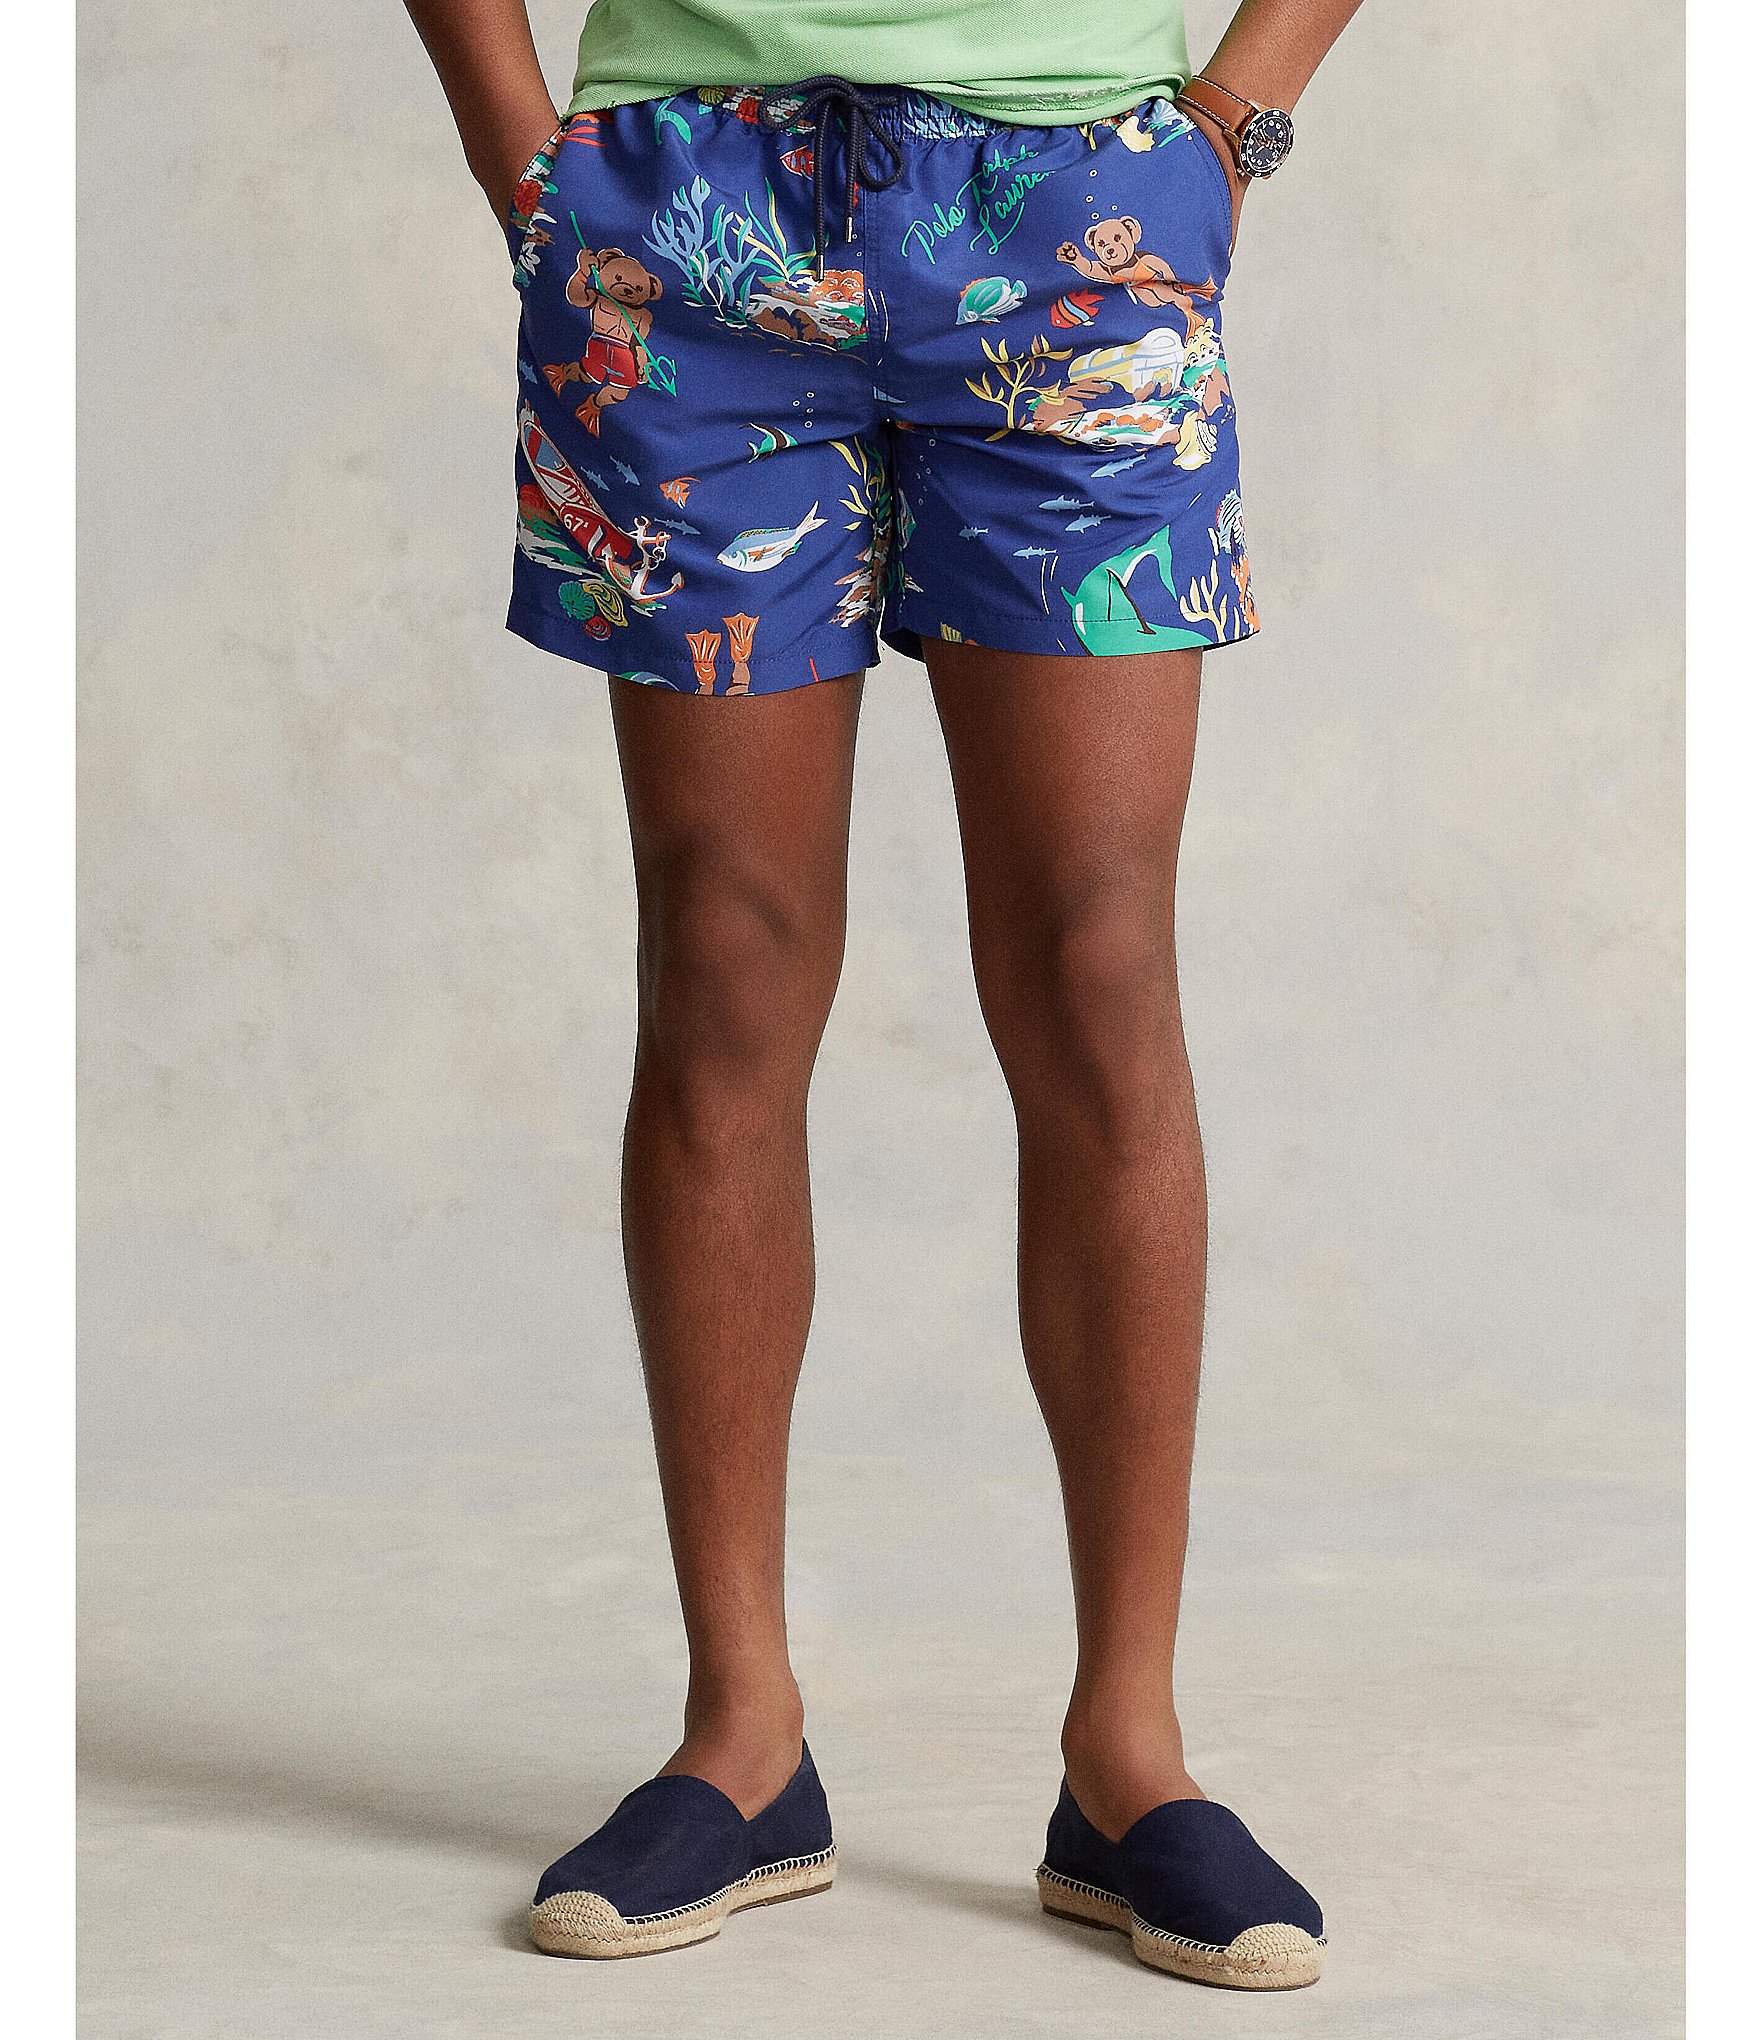 Polo Ralph Lauren Swim Trunks Men's Traveler Classic Fit Swimwear 3-Pocket  Short